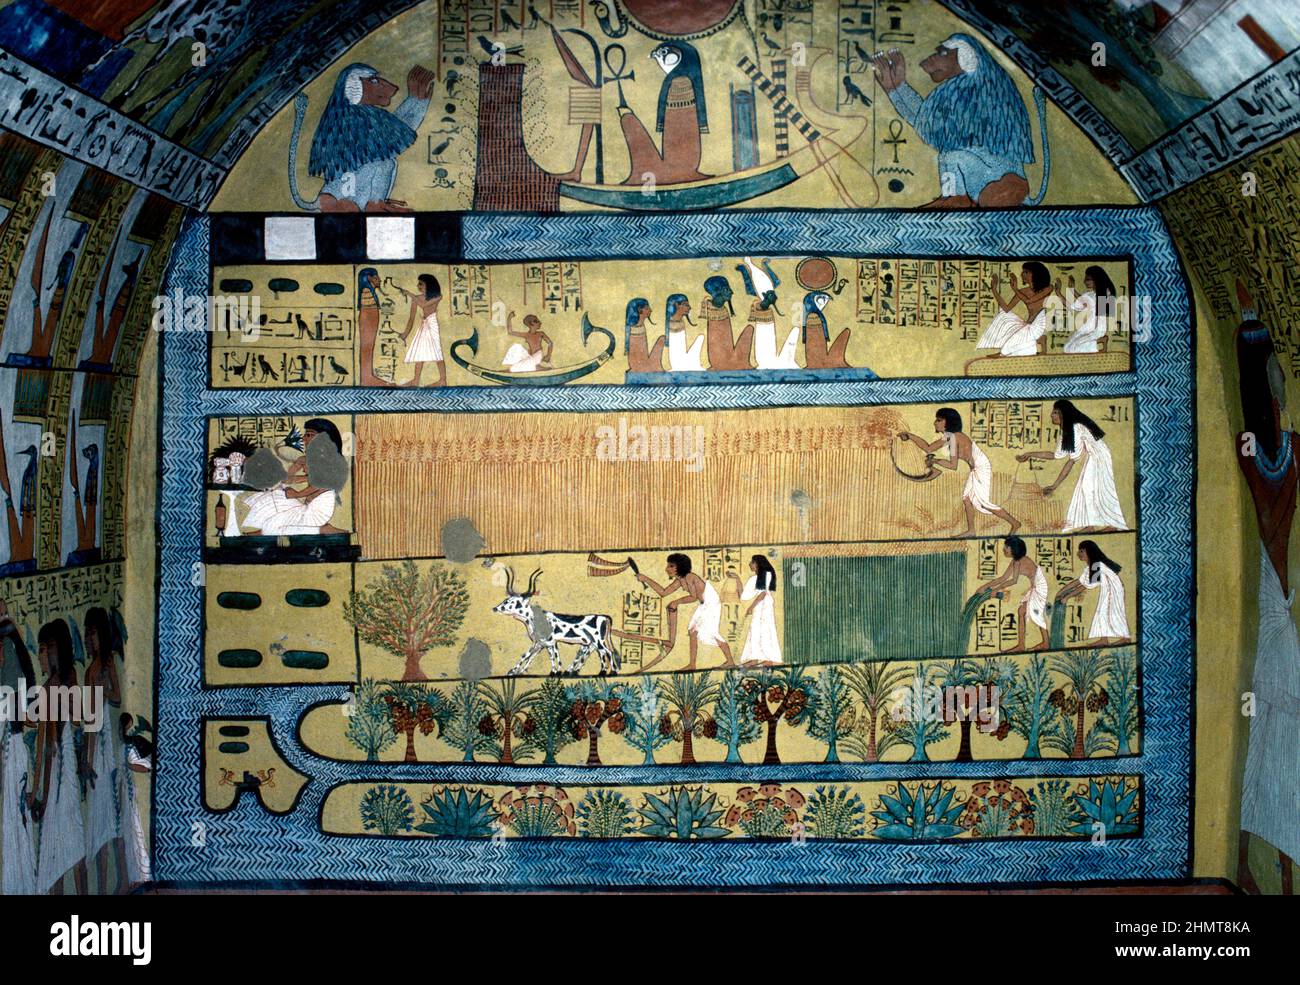 Ägypten, Luxor, Thebes West, Deir el-Medina; Wandgemälde im Grab von Sennodjem, das Sennodjem und seine Frau zeigt, die auf den Feldern der Elysi arbeiten Stockfoto